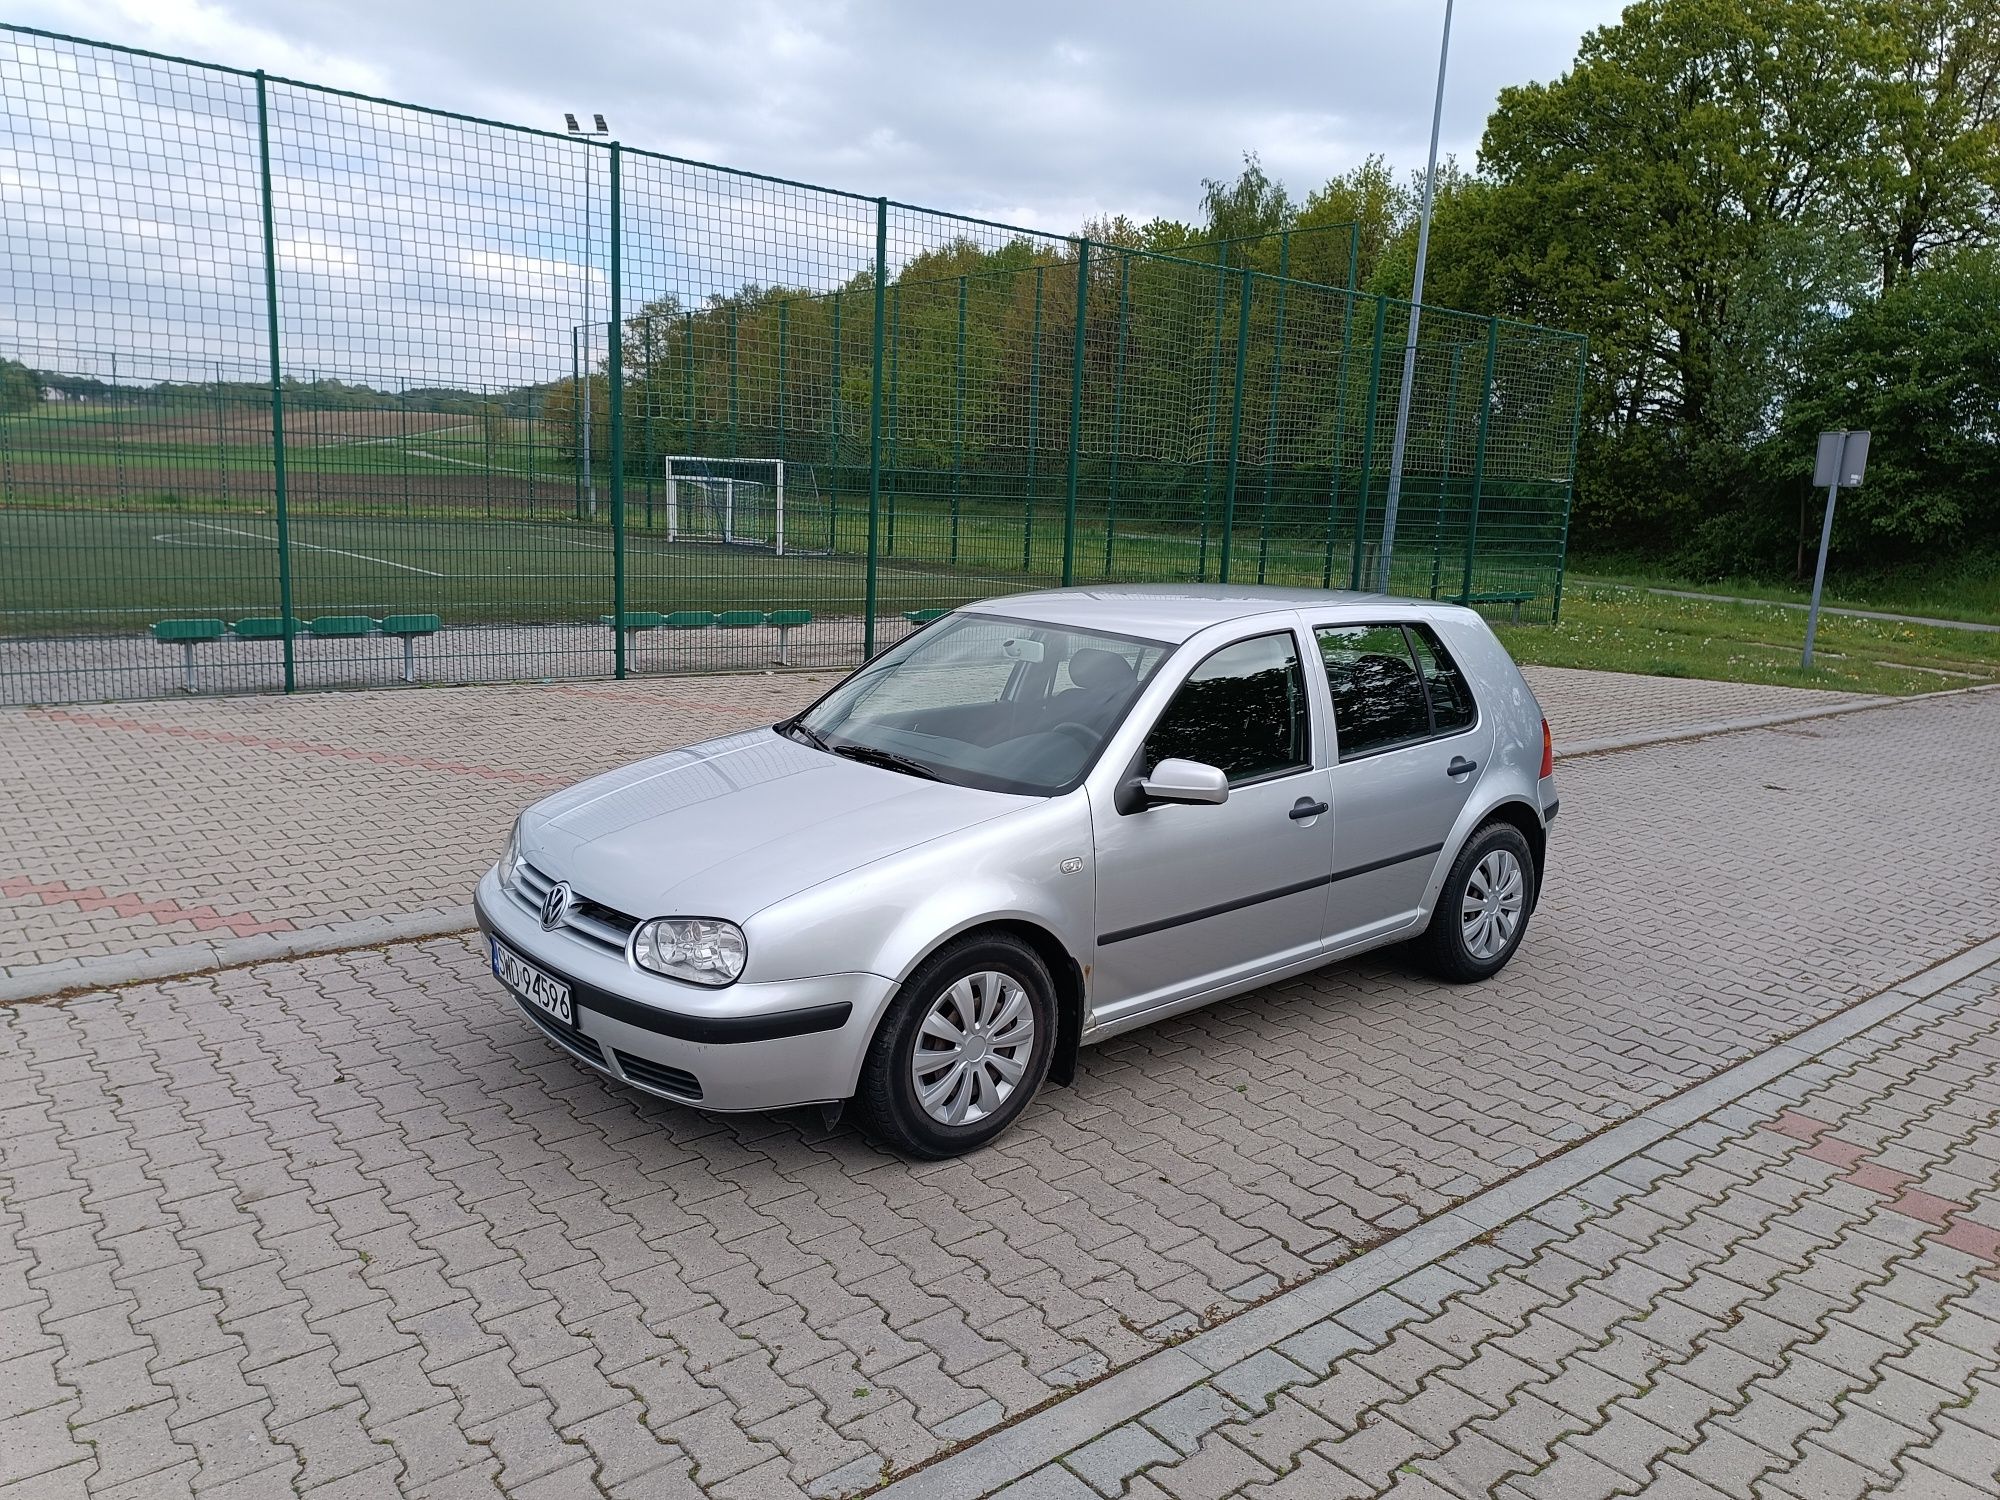 Volkswagen Golf 5-drzwi 1,4 benzyna 75KM 2001r.